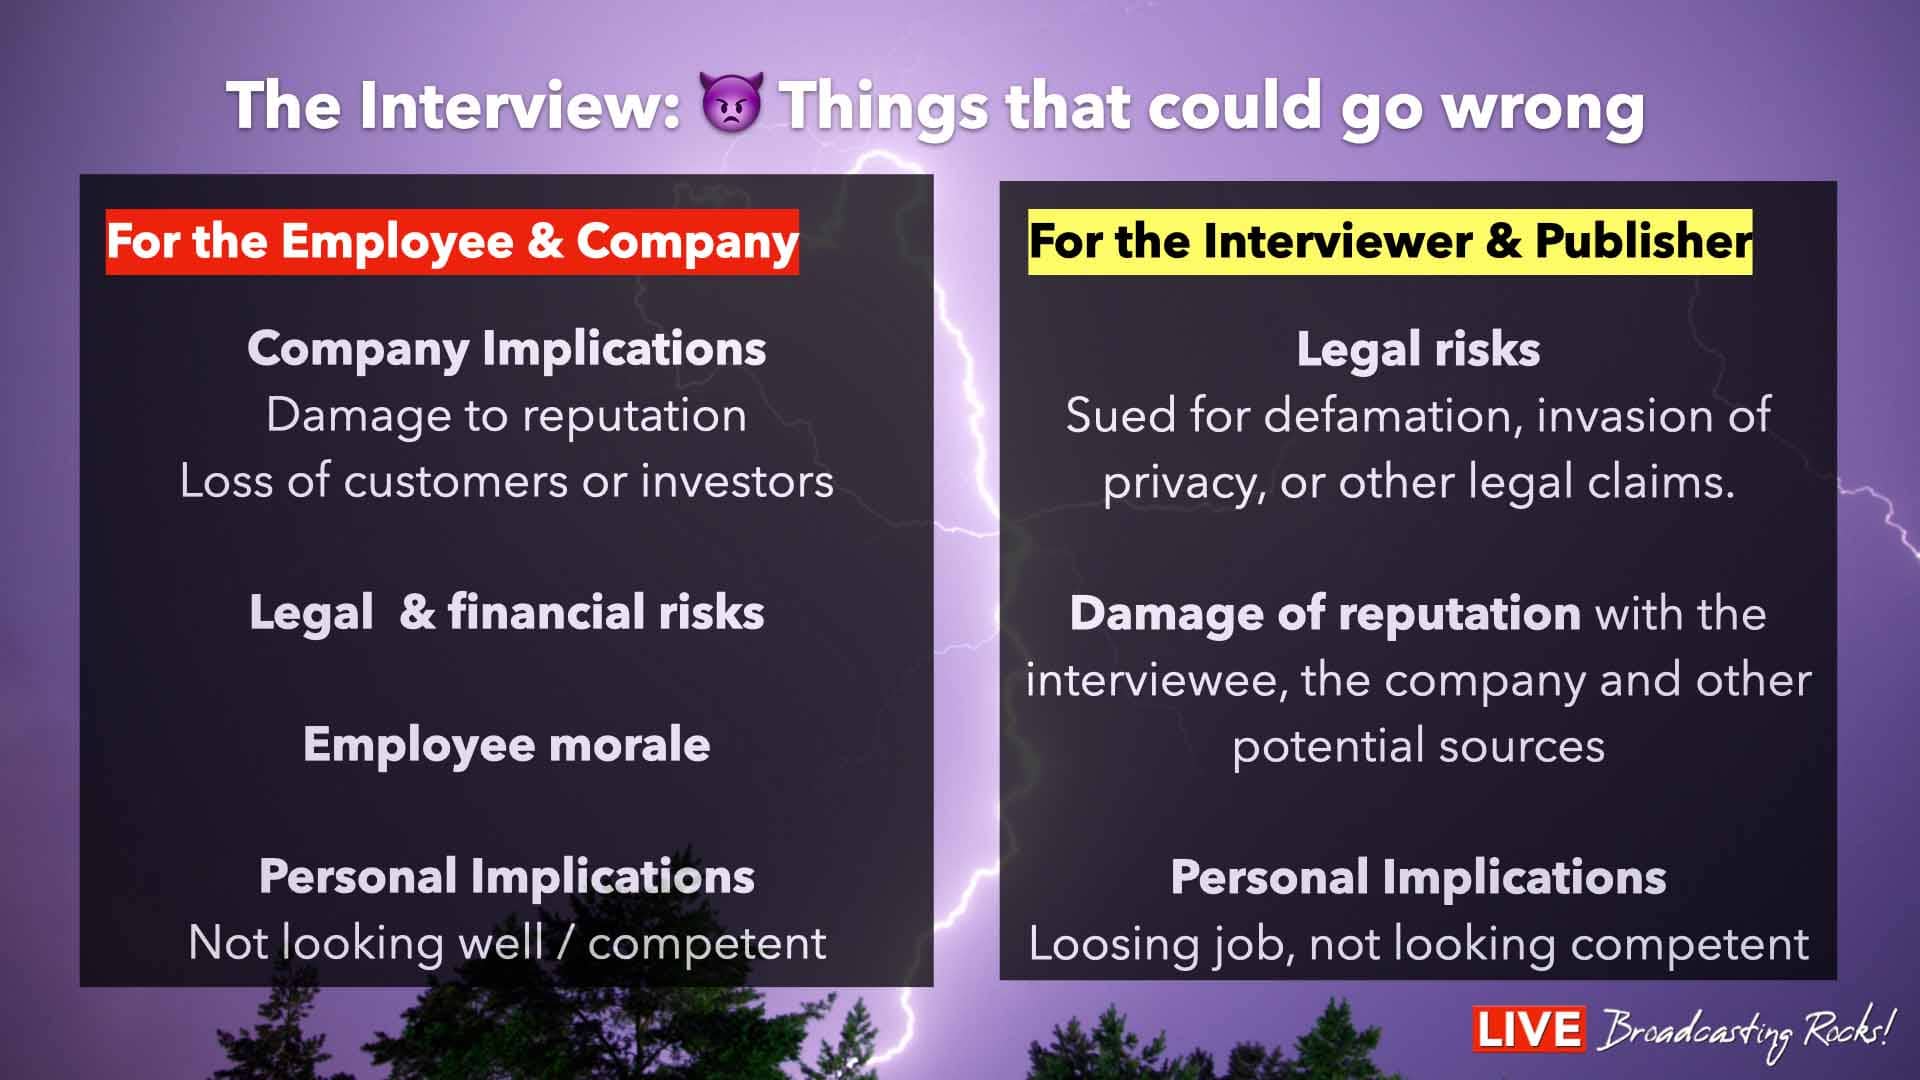 Lorsqu'une interview se passe mal, elle peut aussi présenter plusieurs risques pour une entreprise et le journaliste. Voici quelques-uns des risques potentiels